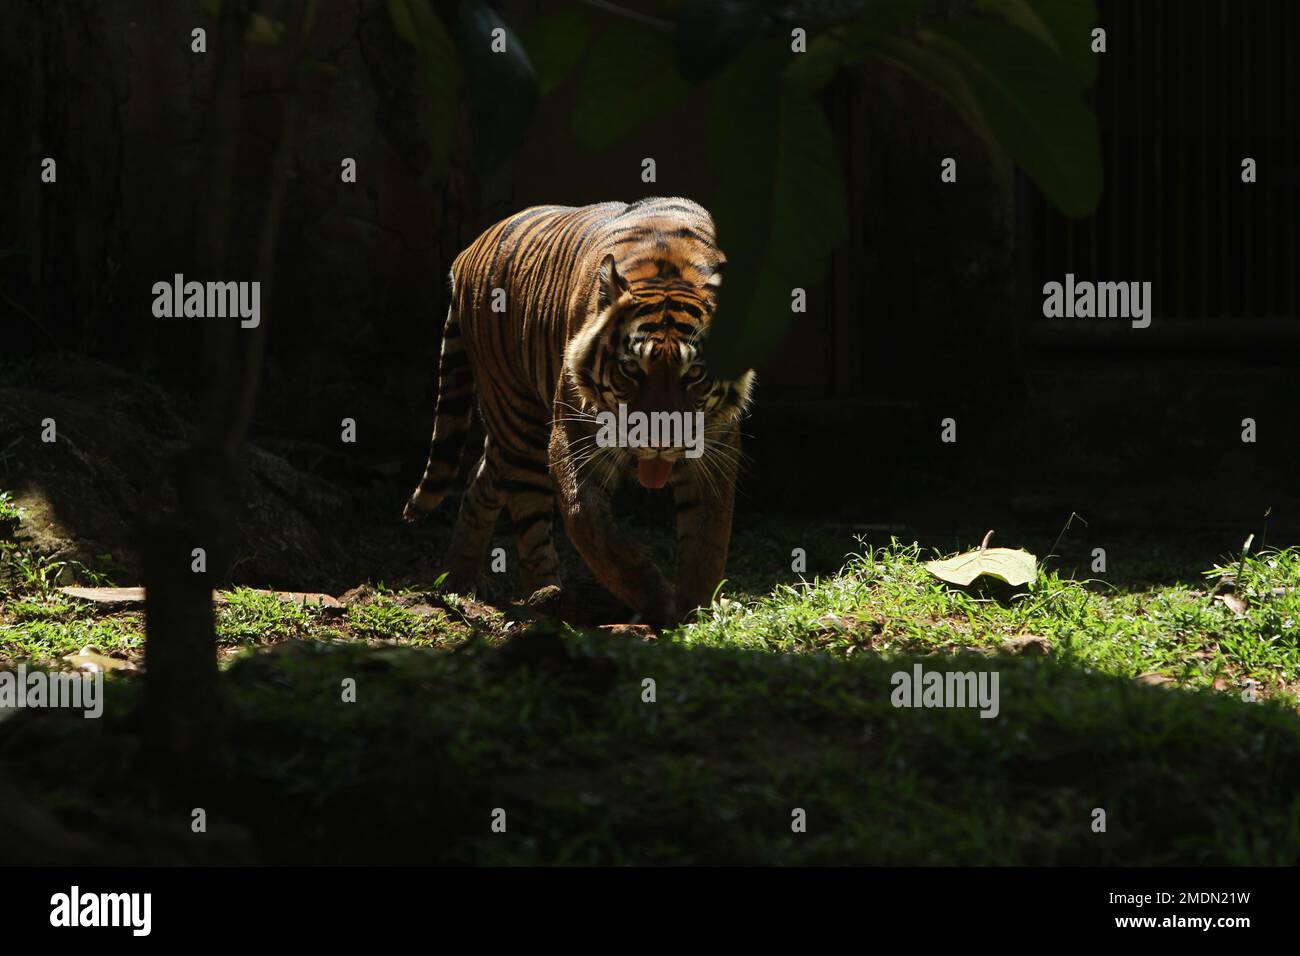 Portrait d'un tigre de Sumatra évitant la lumière Banque D'Images